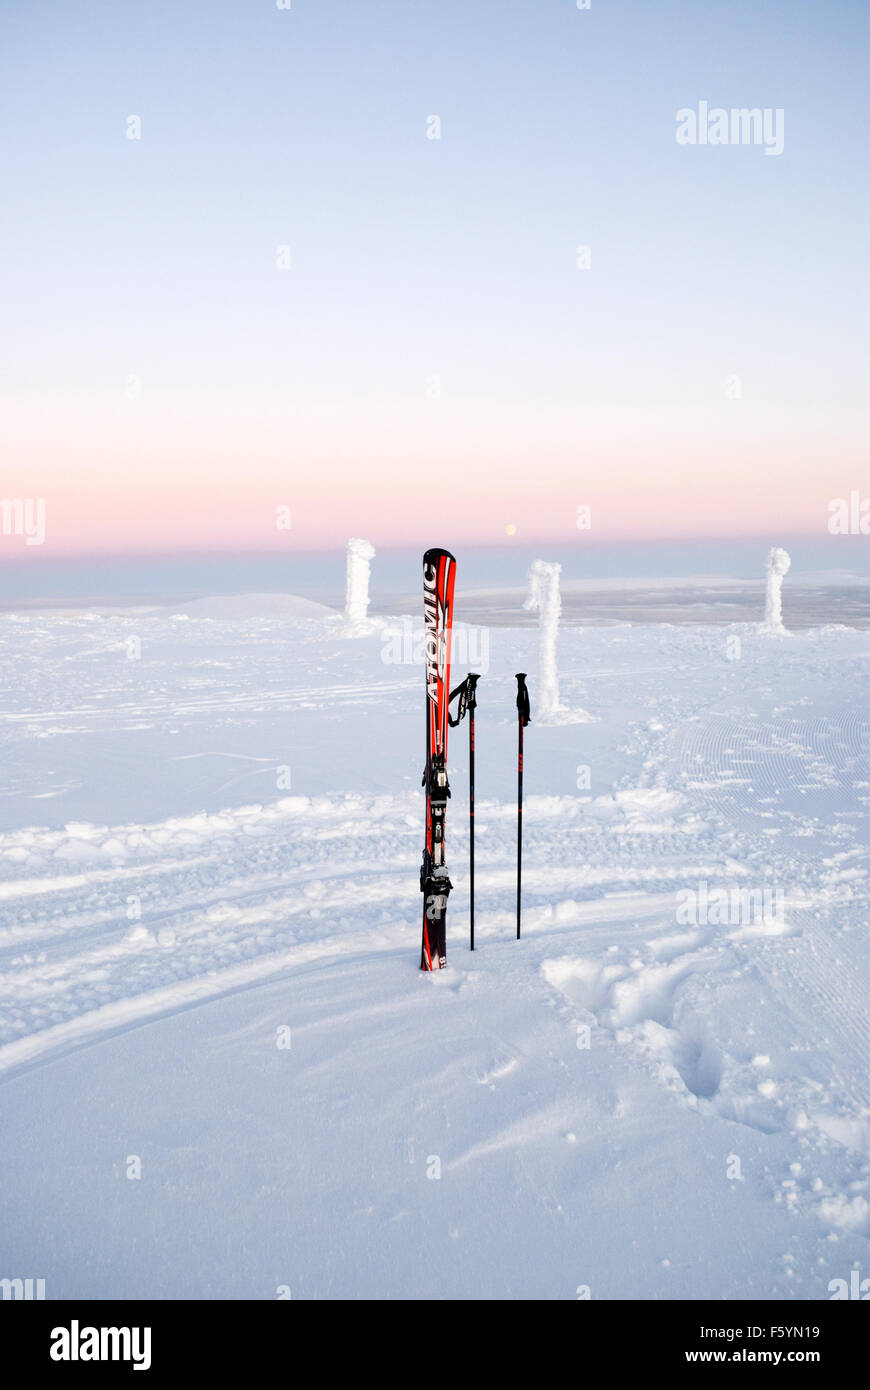 Des scènes d'hiver dans la station de ski de Yllas, la Laponie finlandaise. Skis et bâtons de ski Banque D'Images